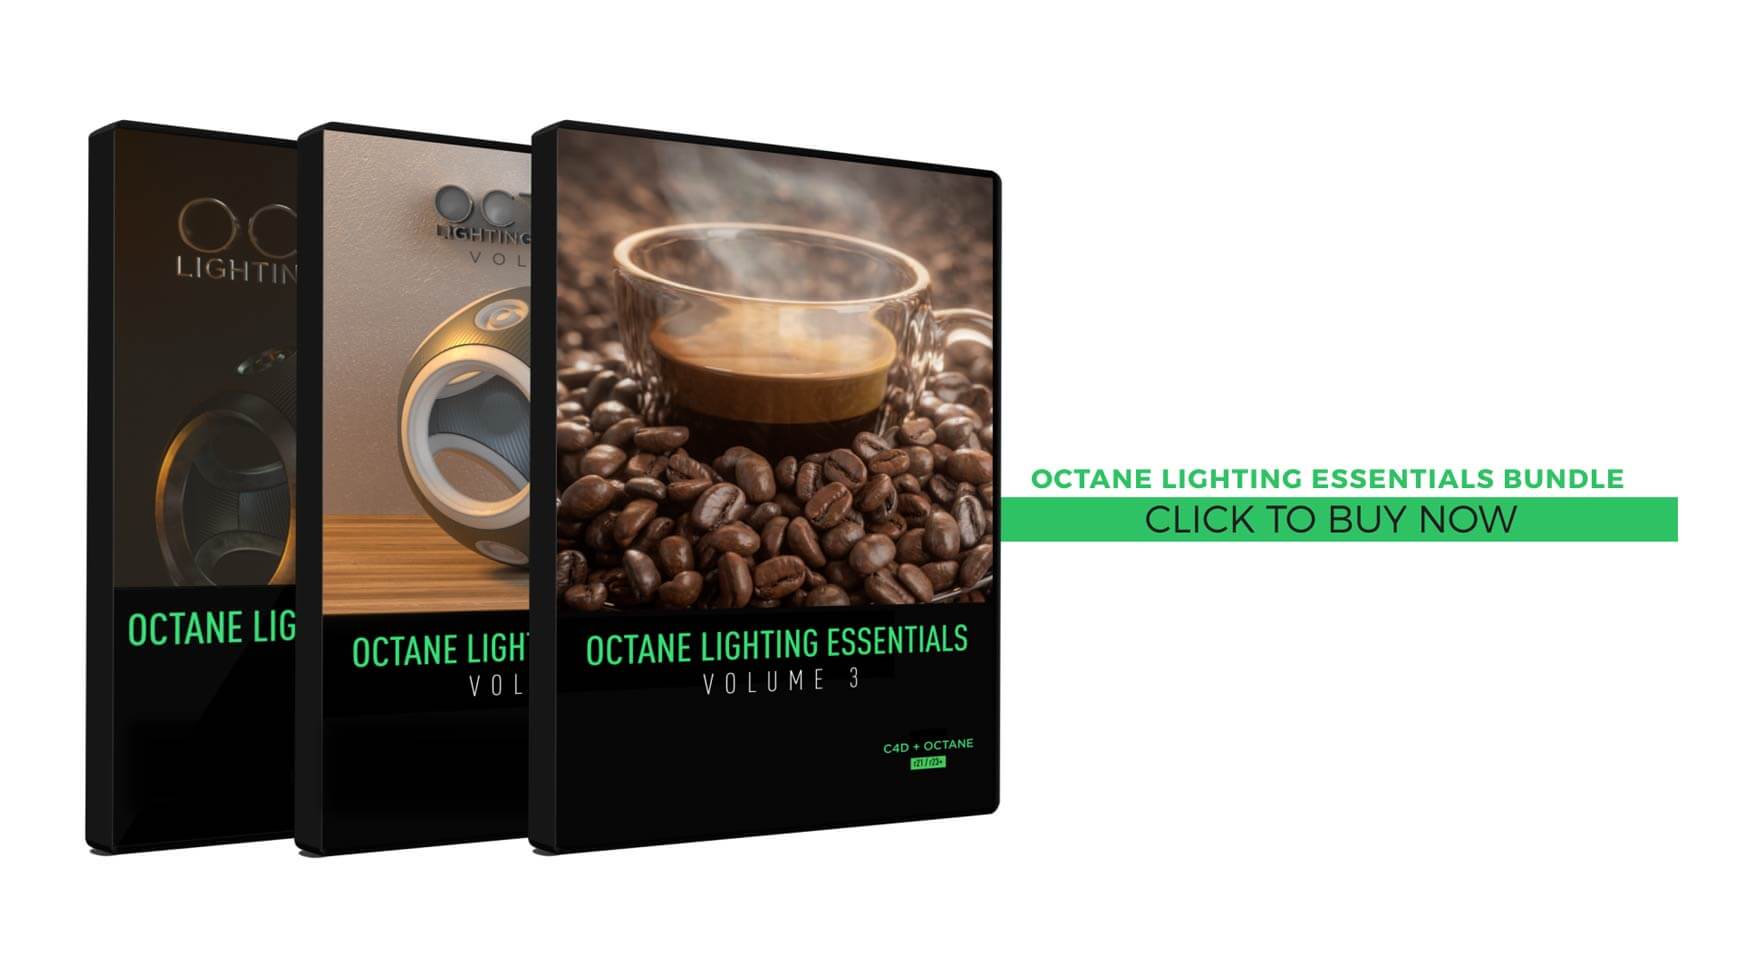 Otoy Octane Lighting Essentials Cinema 4D Lighting studio bundle